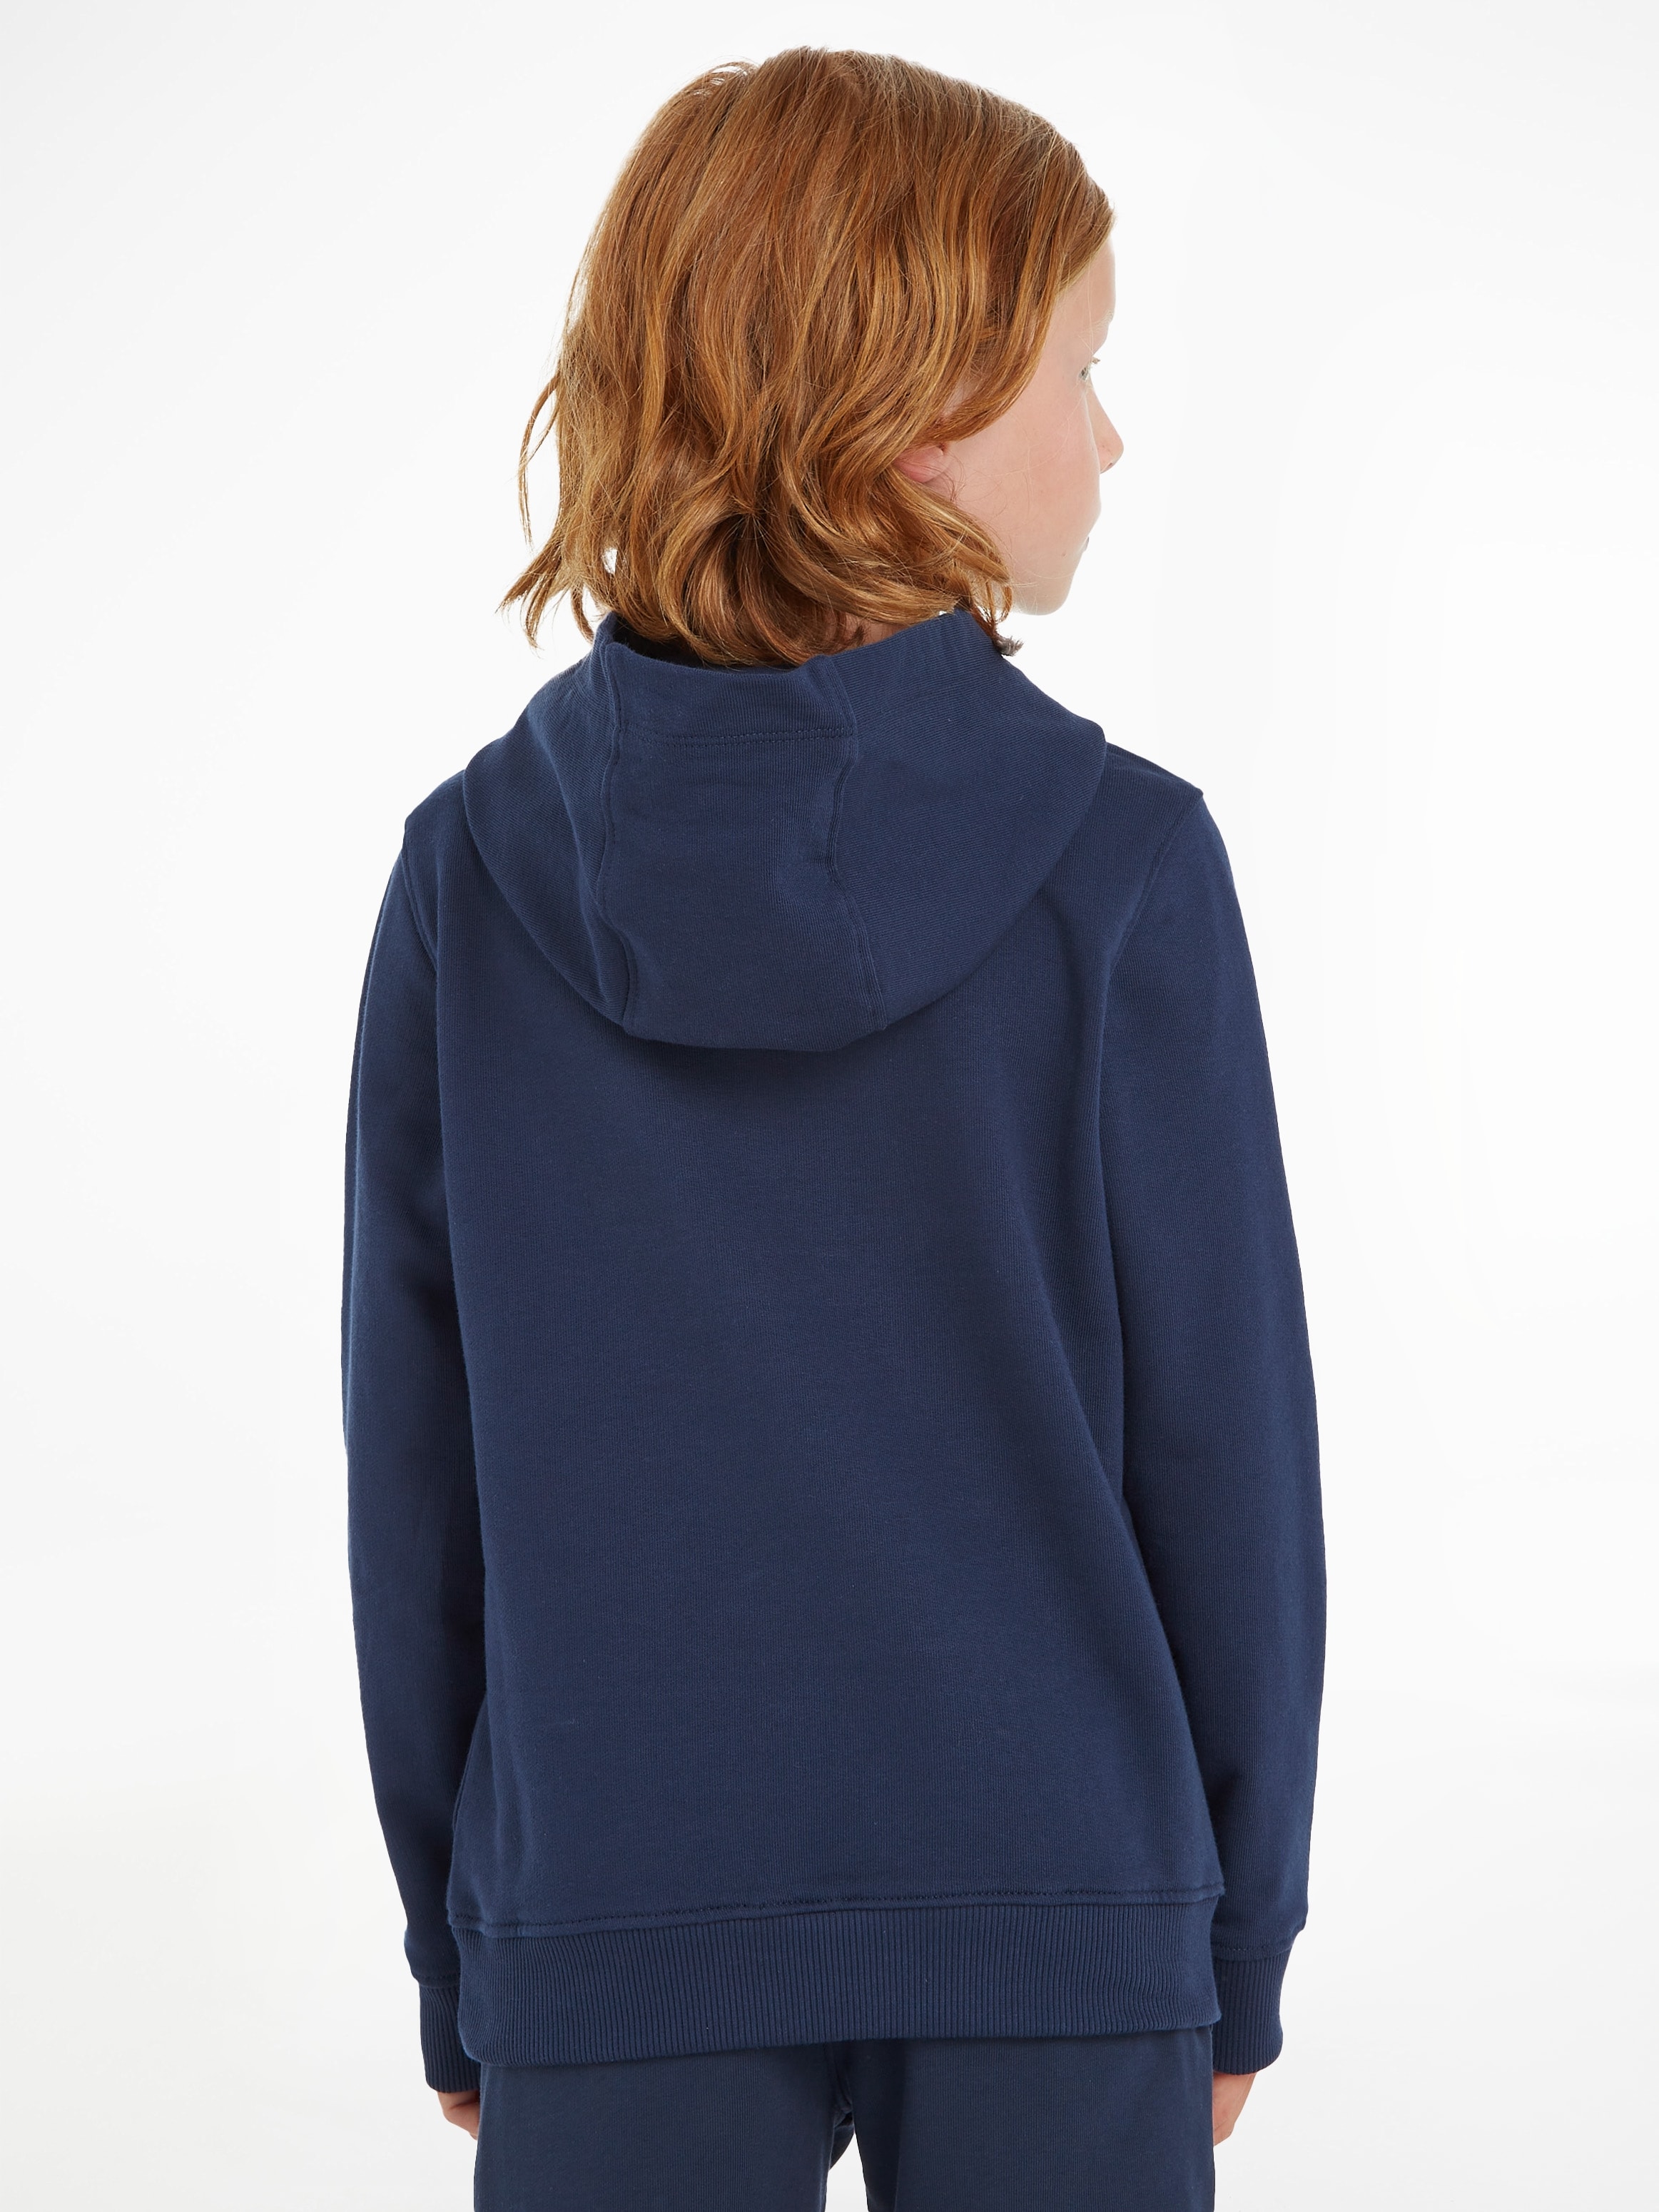 HOODIE«, MiniMe,für Mädchen Kapuzensweatshirt Jungen Junior »ESSENTIAL Kids Hilfiger Kinder und Tommy OTTO bei kaufen